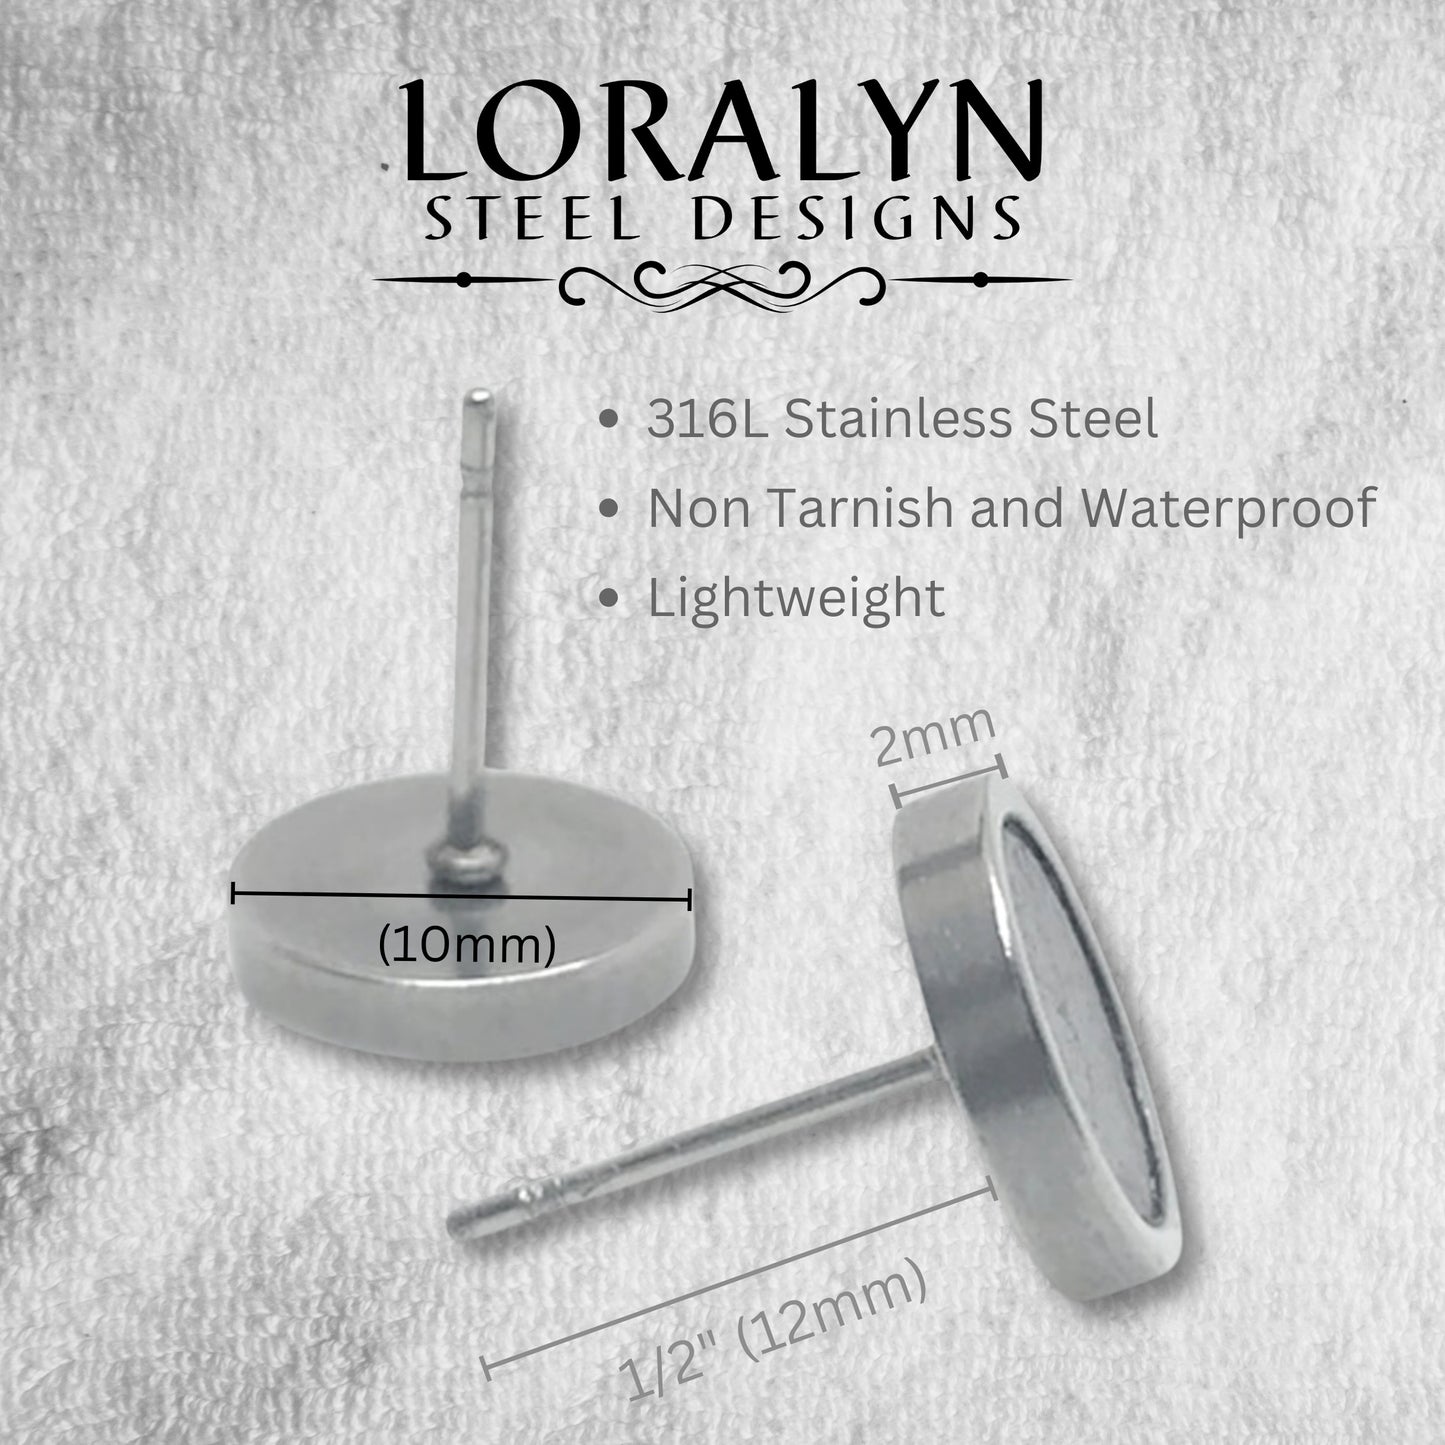 Stainless Steel 10mm Circle Stud Earrings